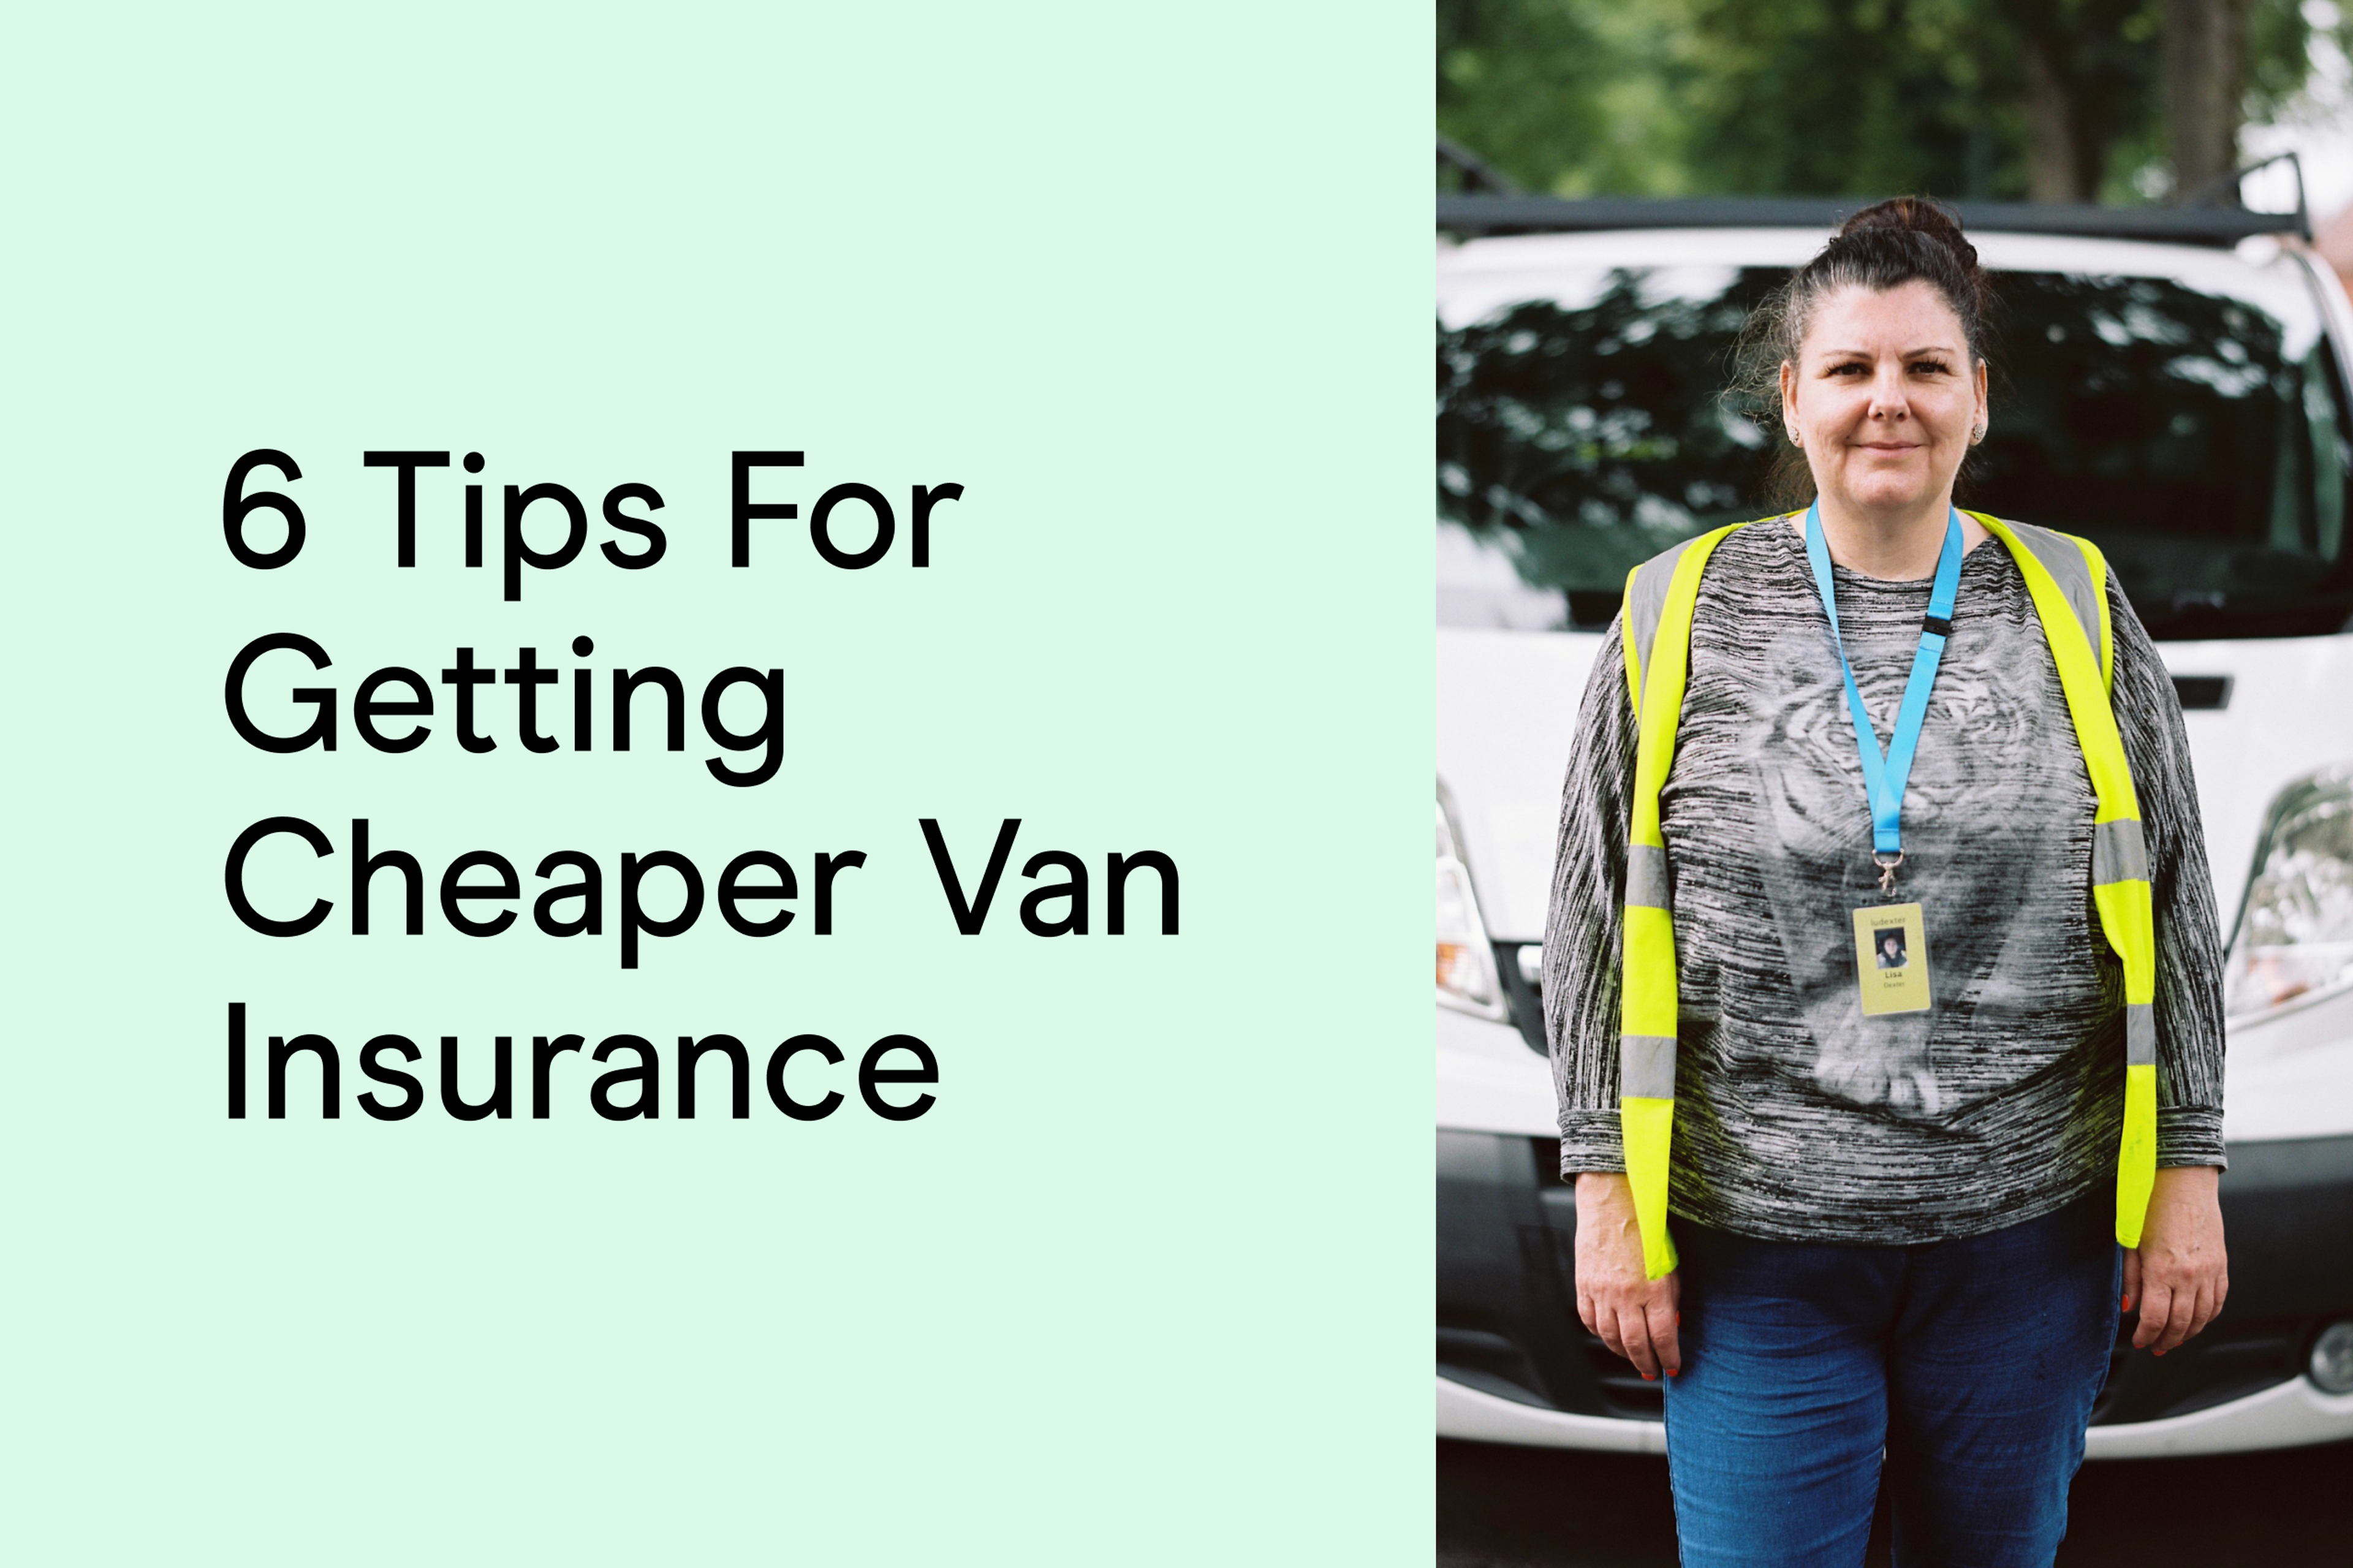 cheaper van insurance tips